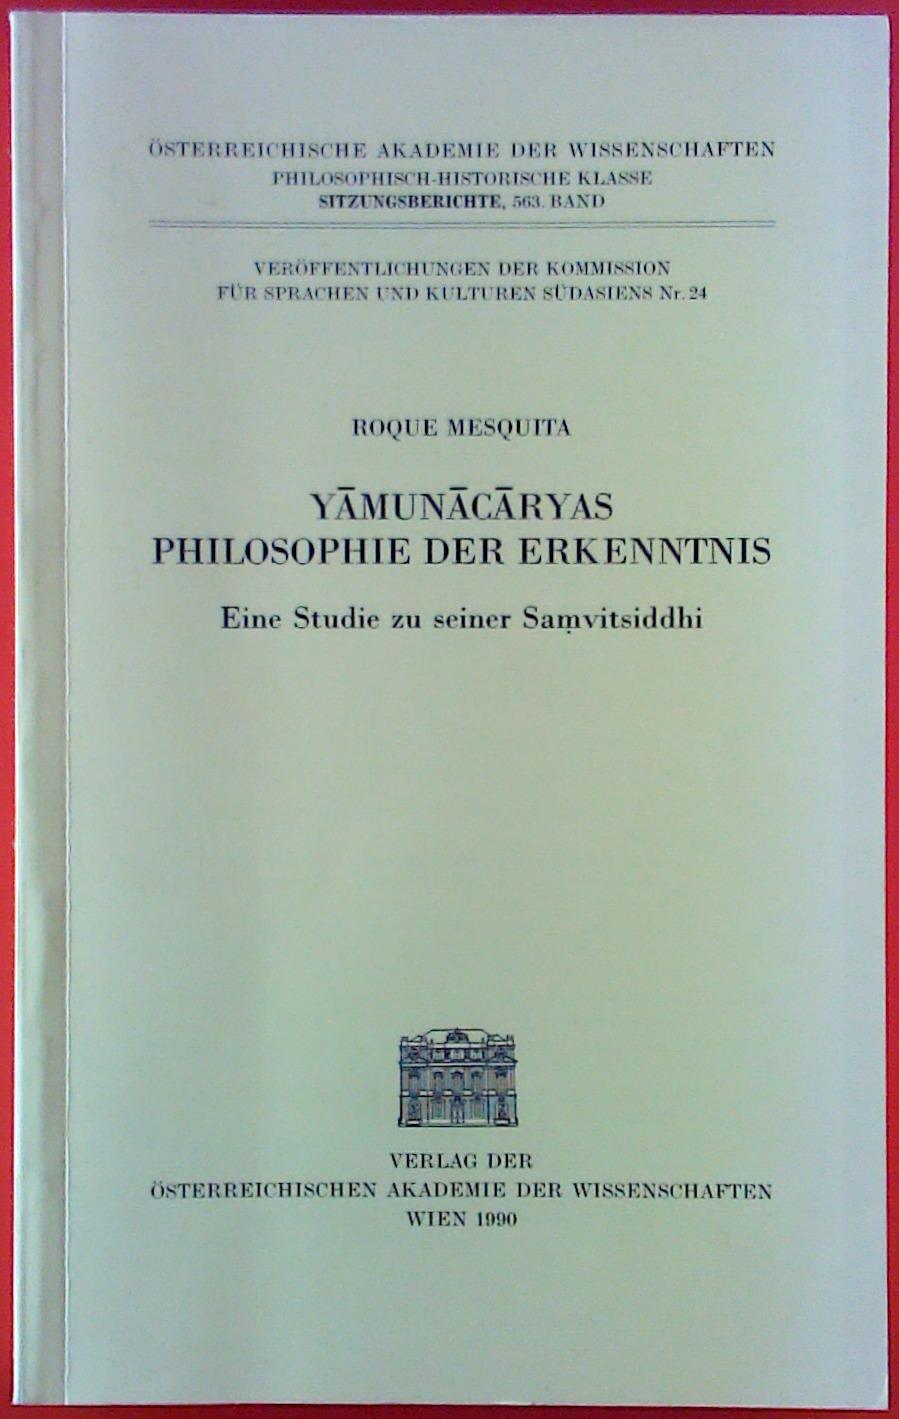 Yamunacaryas Philosophie der Erkenntnis, eine Studie zu seiner Samvitsiddhi - Roque Mesquita